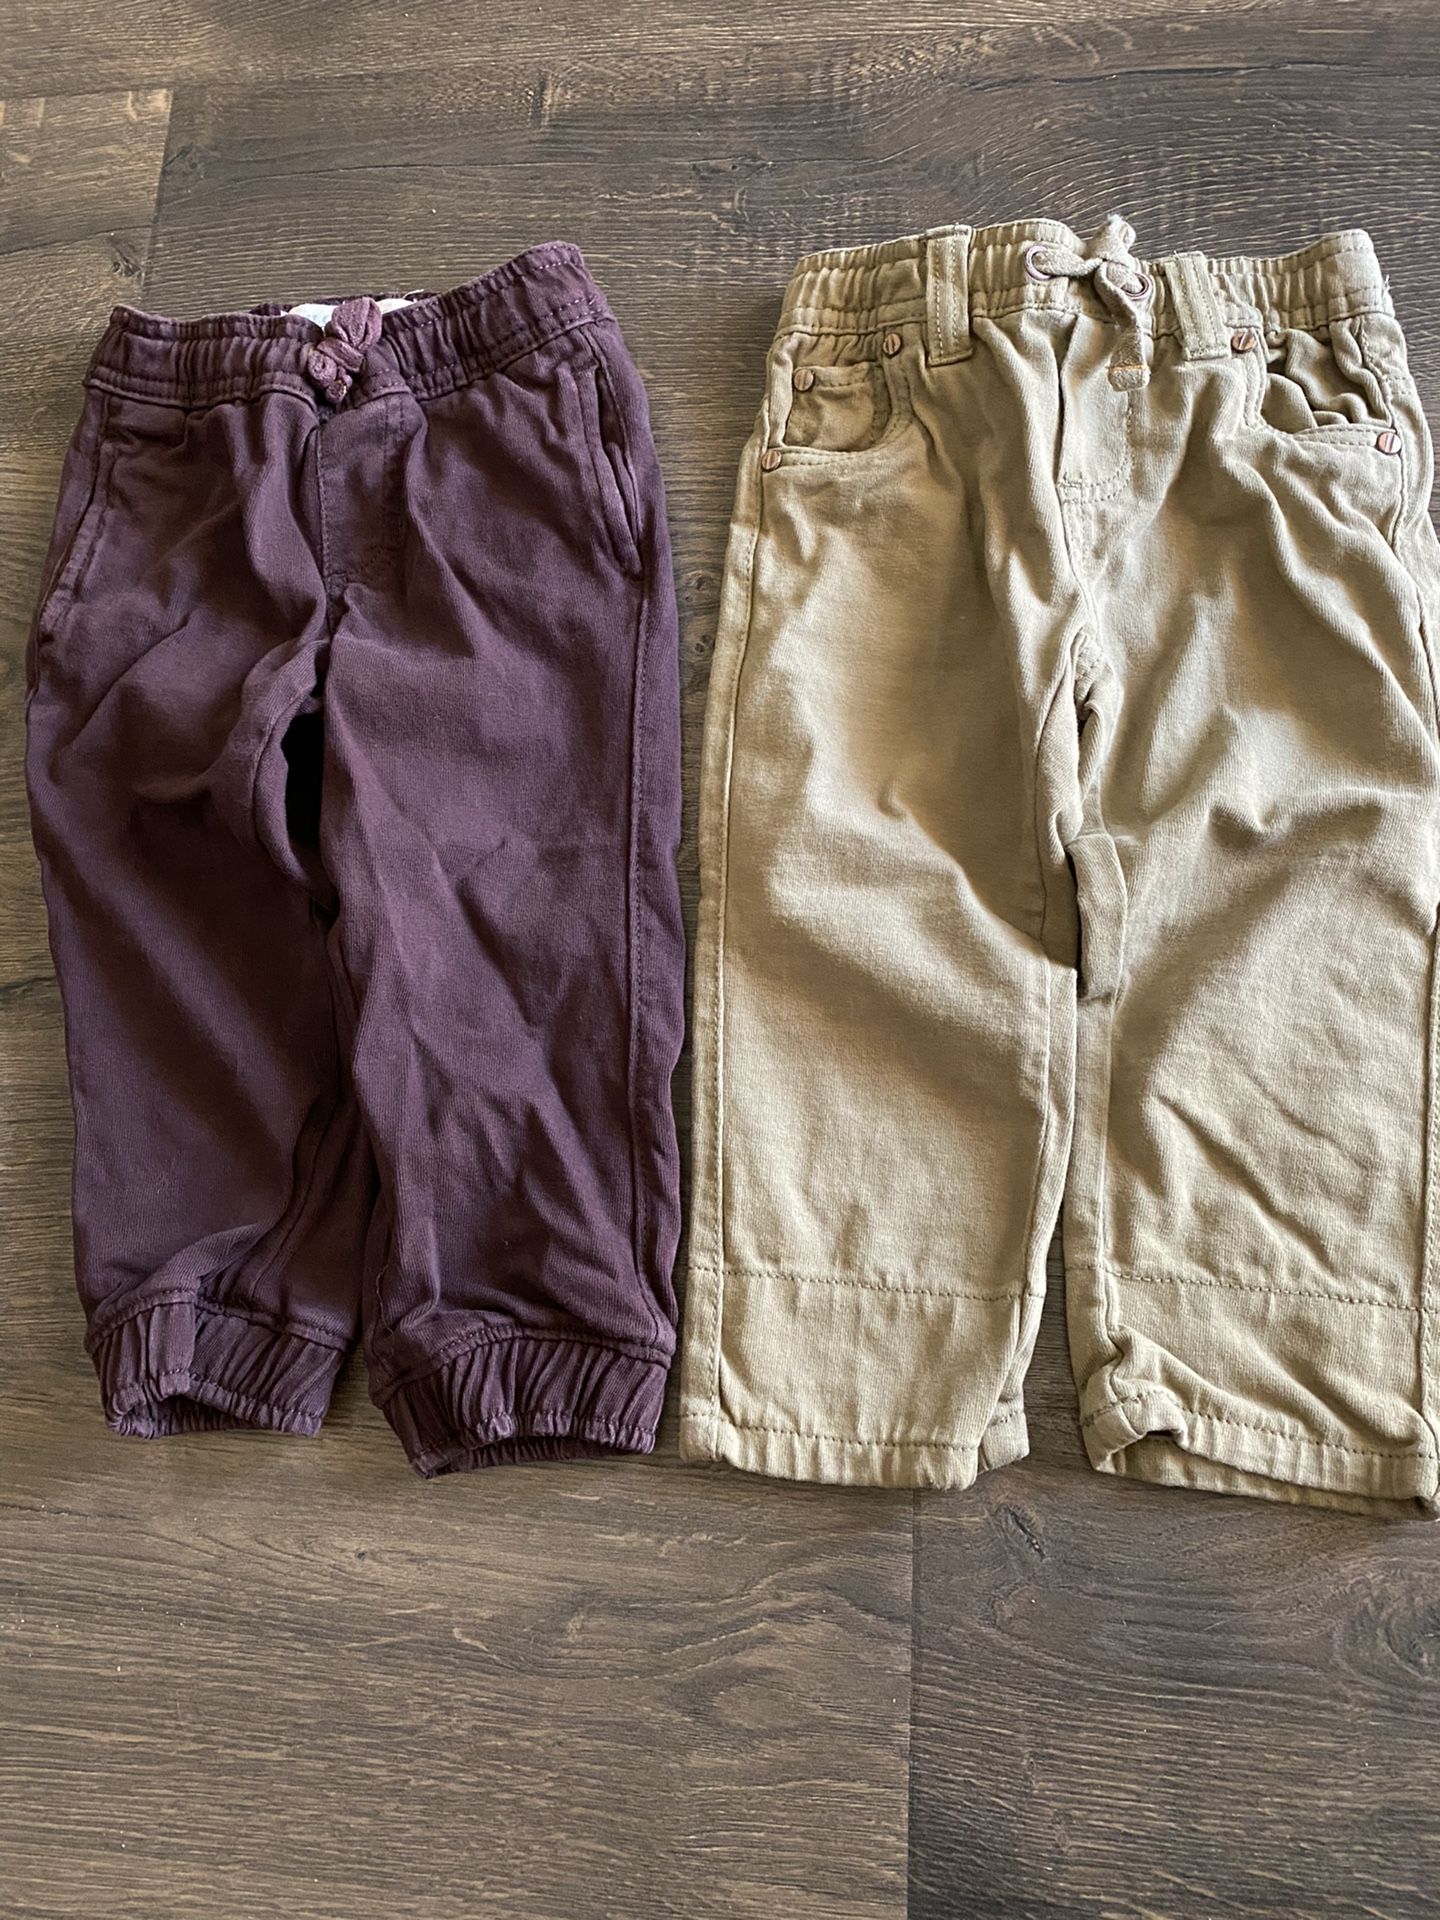 Boys Pants Size 2/3